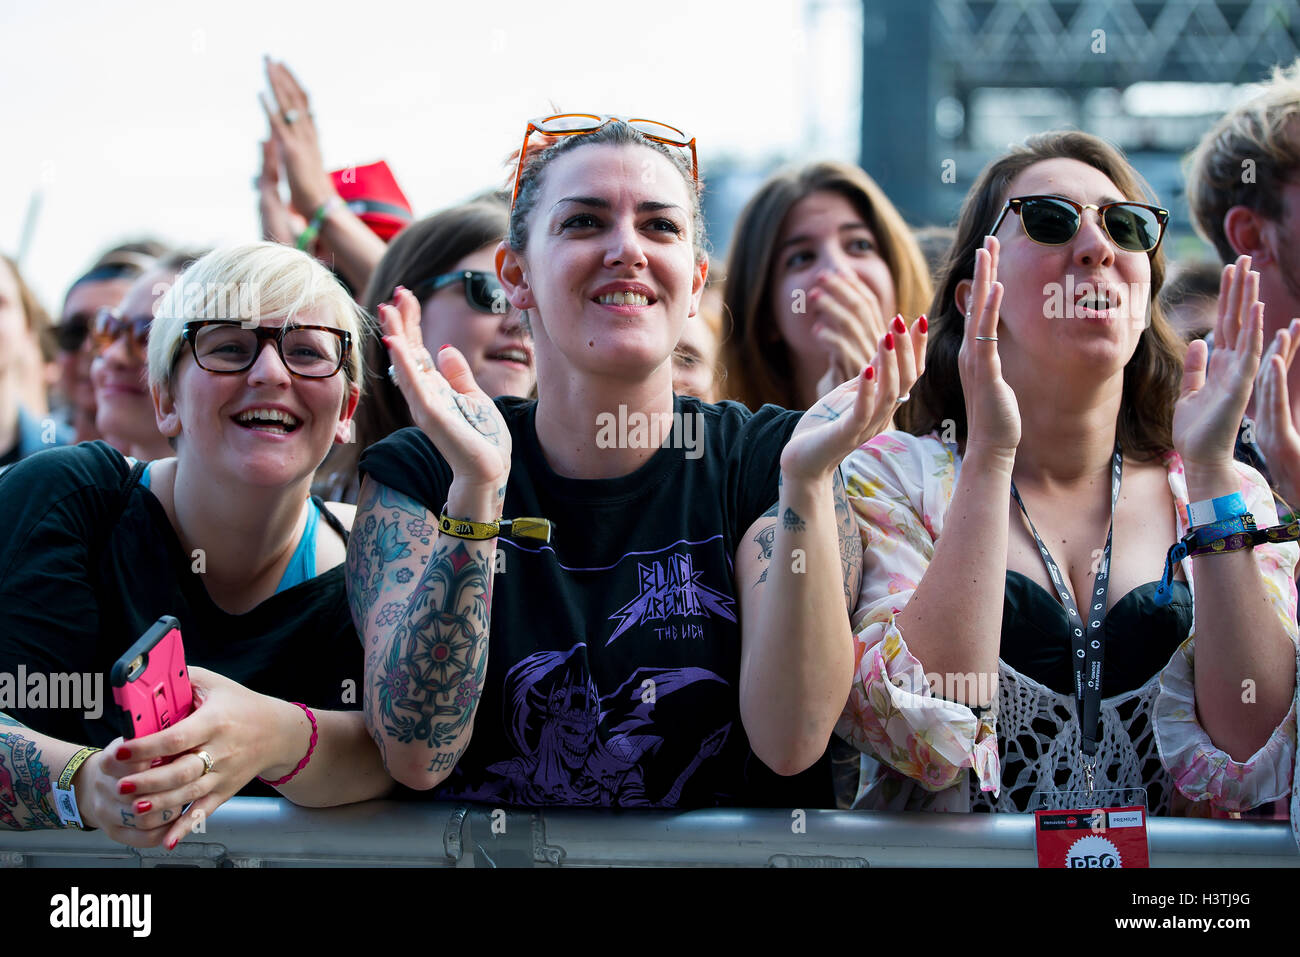 BARCELONA - 29 mai : Les gens applaudir dans un concert au Primavera Sound Festival 2015 le 29 mai 2015 à Barcelone, Espagne. Banque D'Images